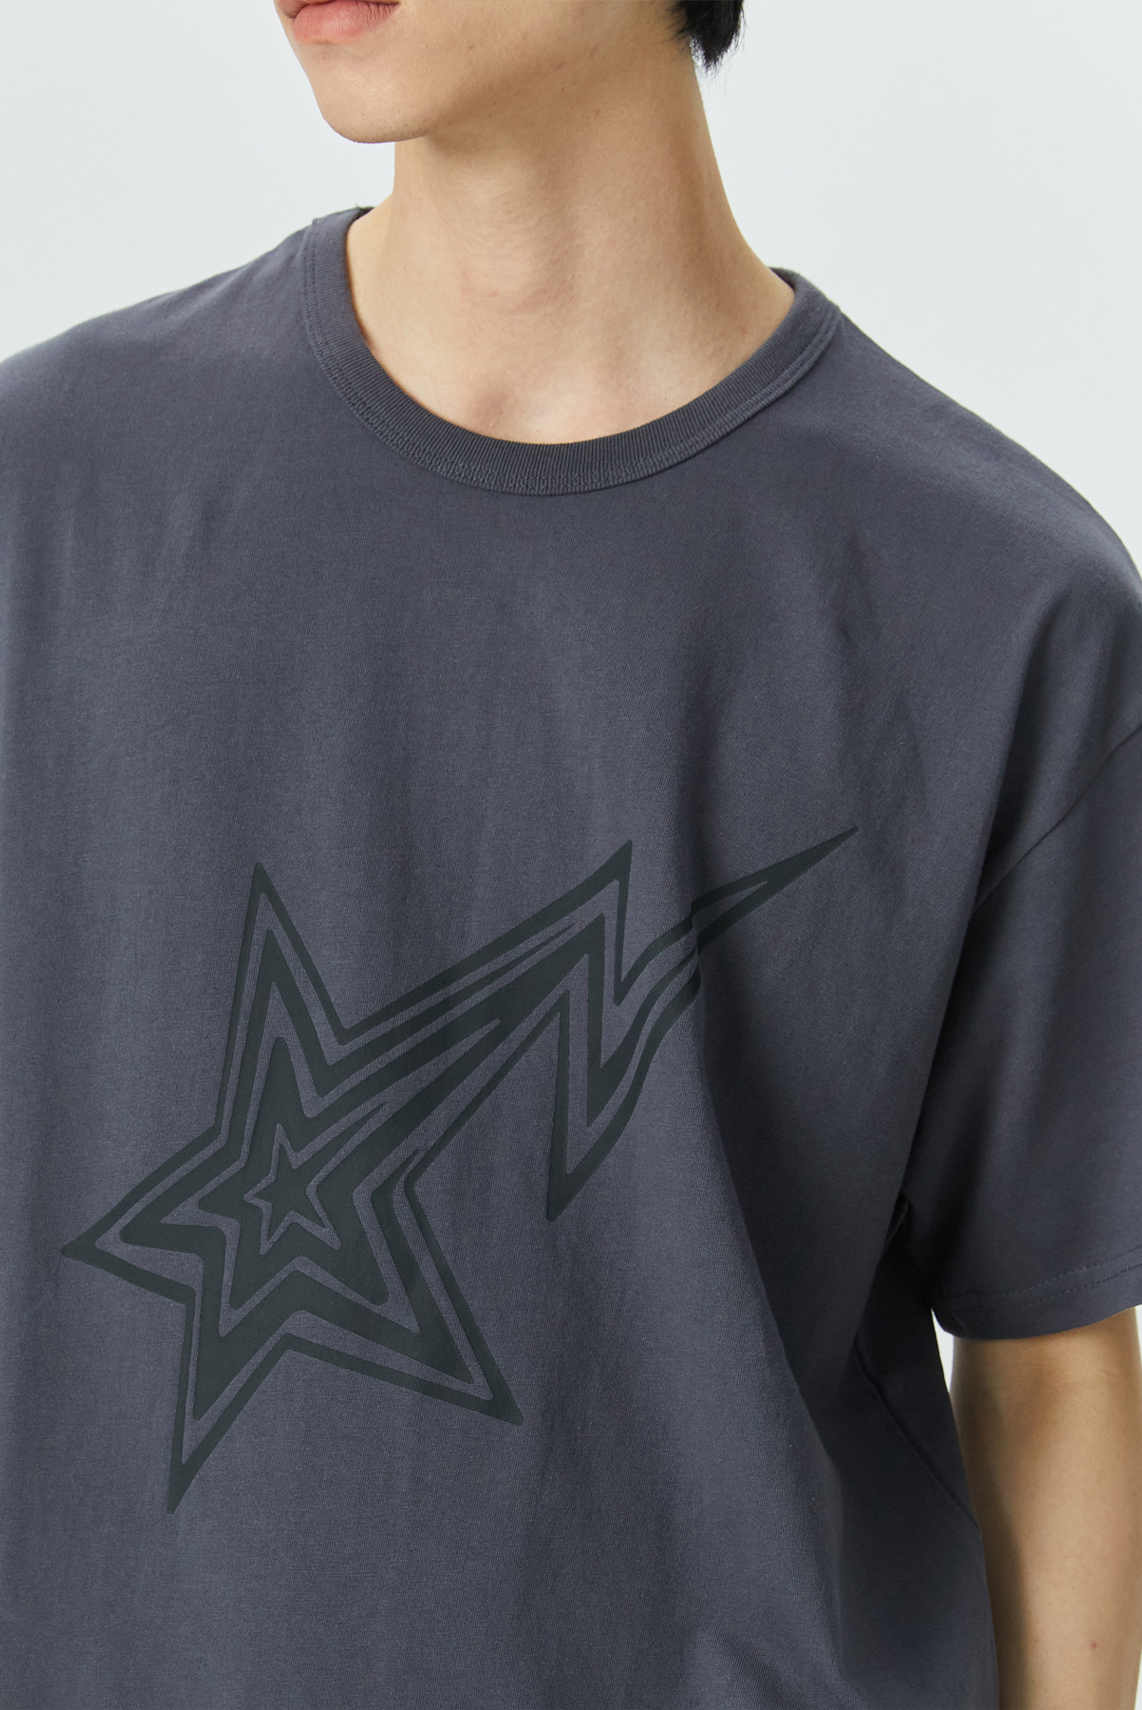 Edition1. 일렉트릭 락 스타 빈티지 프린트 오버핏 반팔 티셔츠 (다크 그레이)